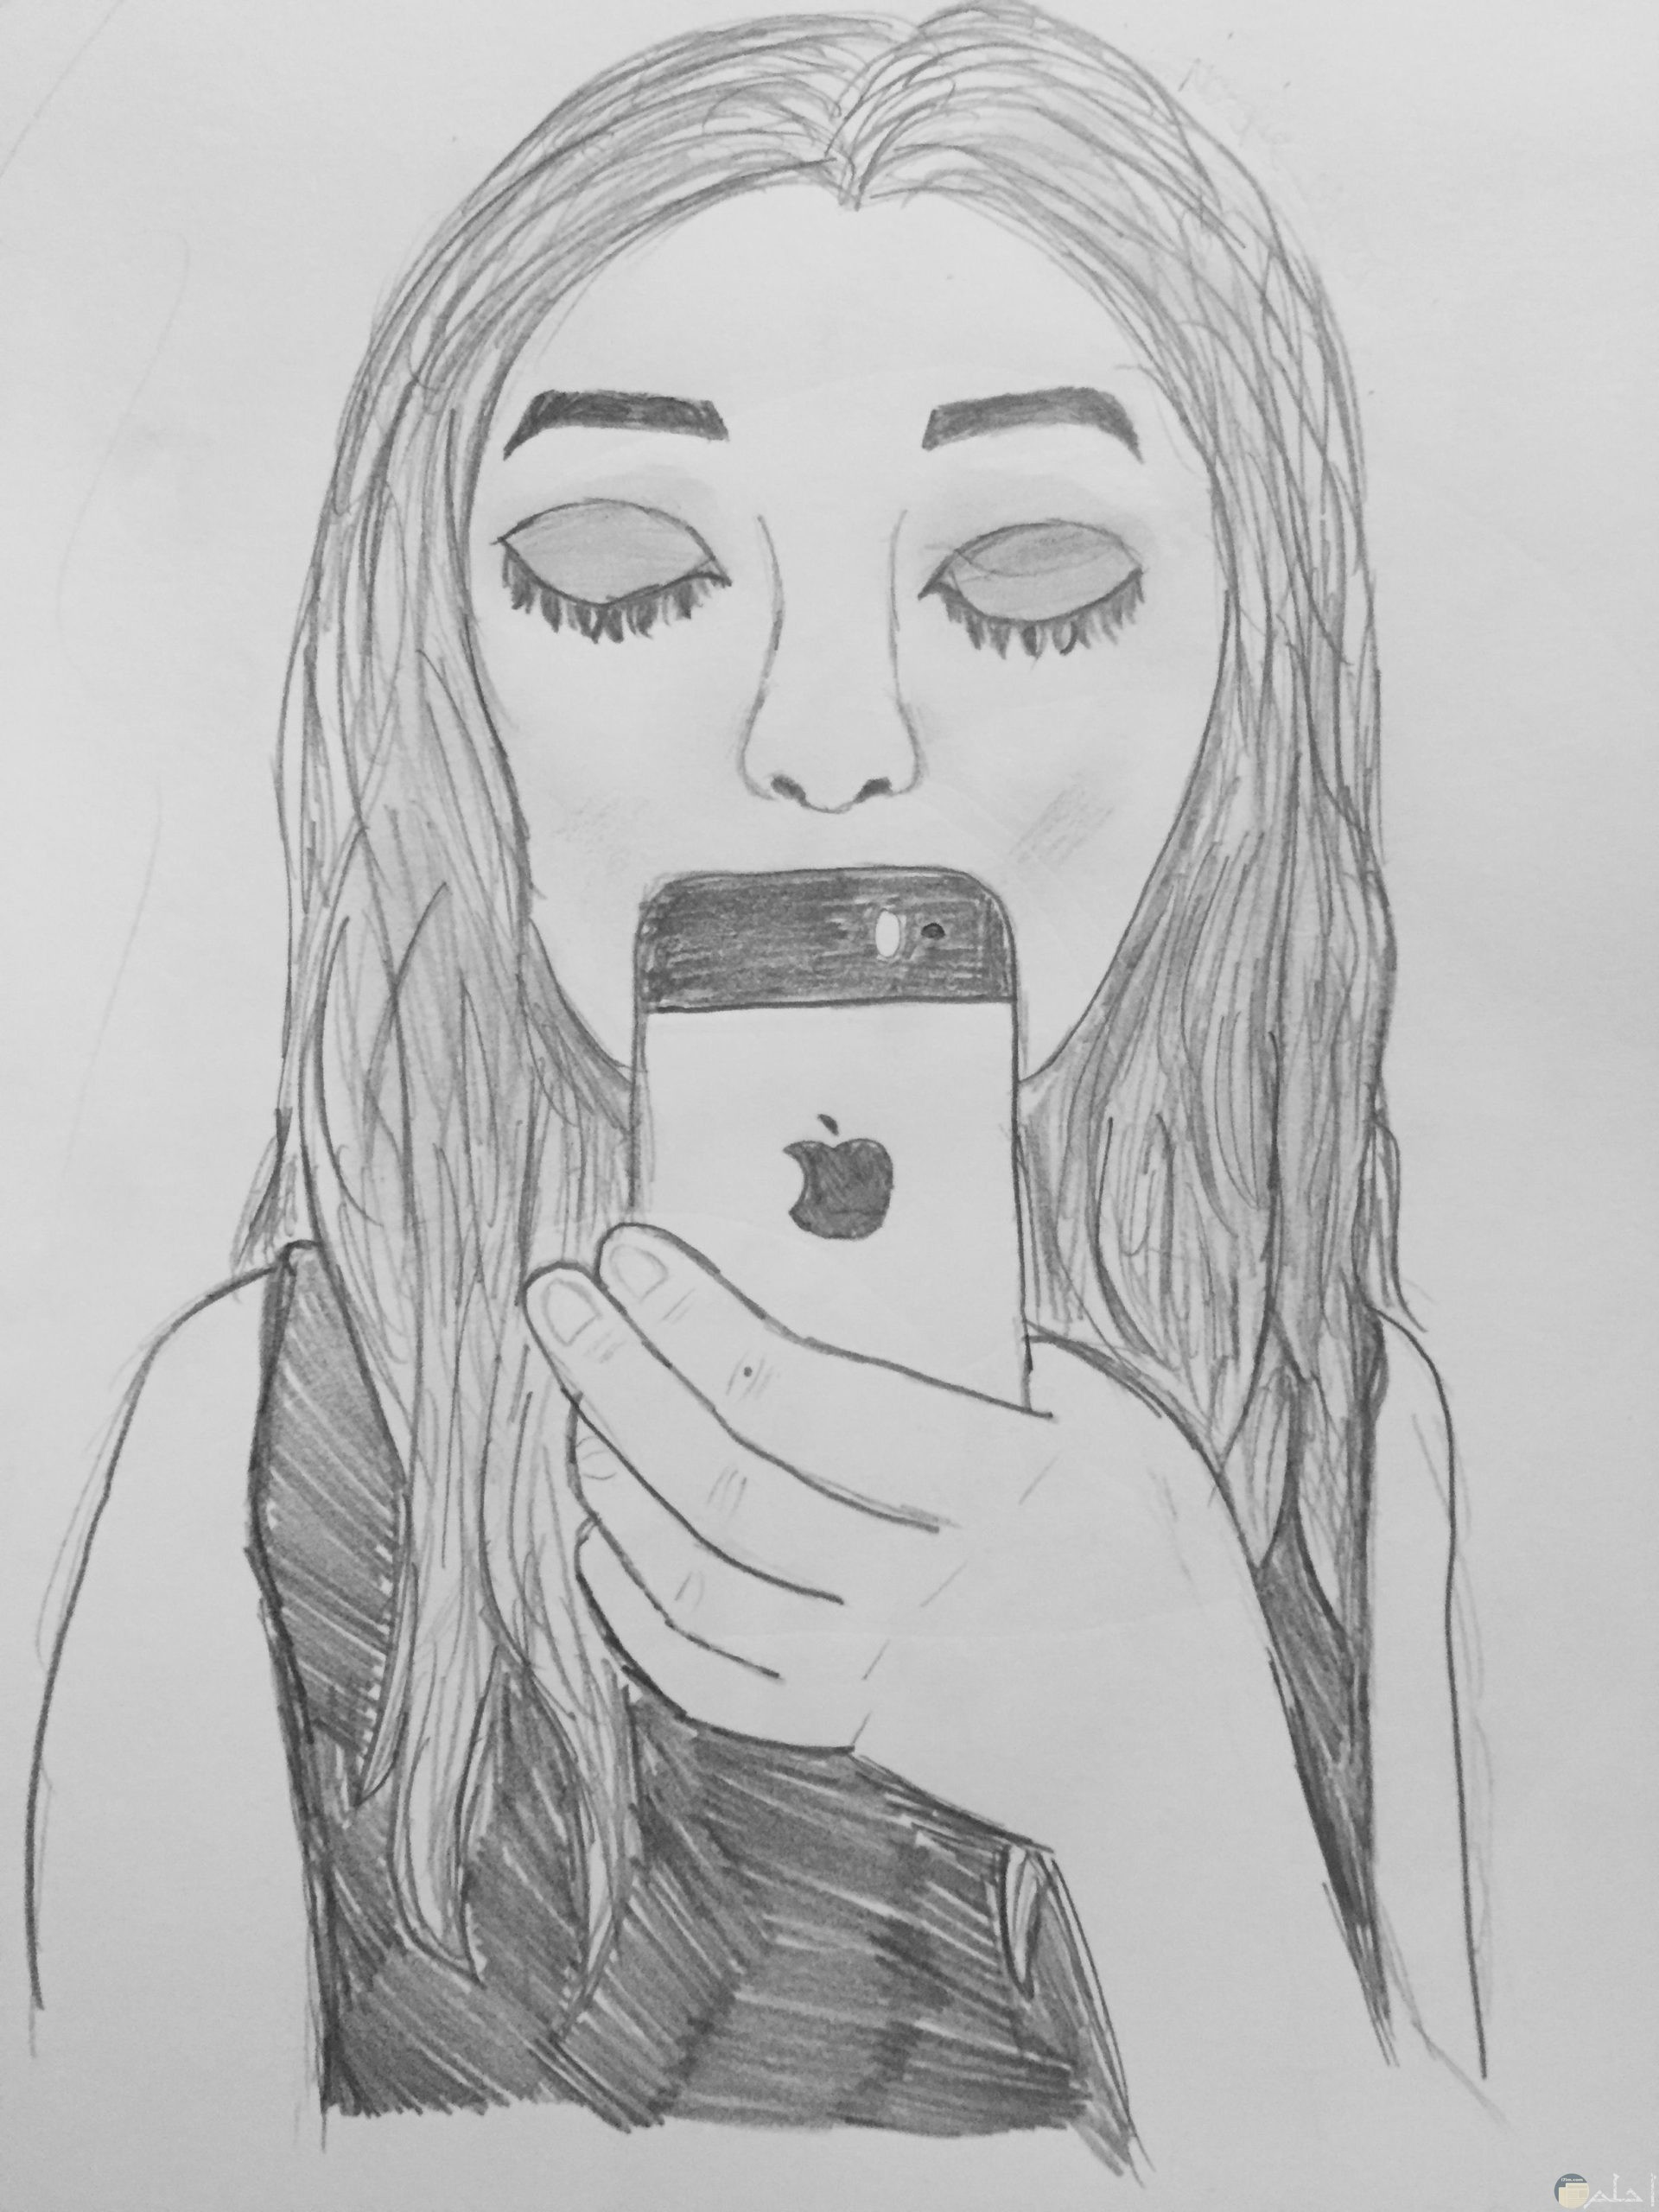 رسمة بنت بالقلم الرصاص مع هاتف محمول و تصوير سيلفى.